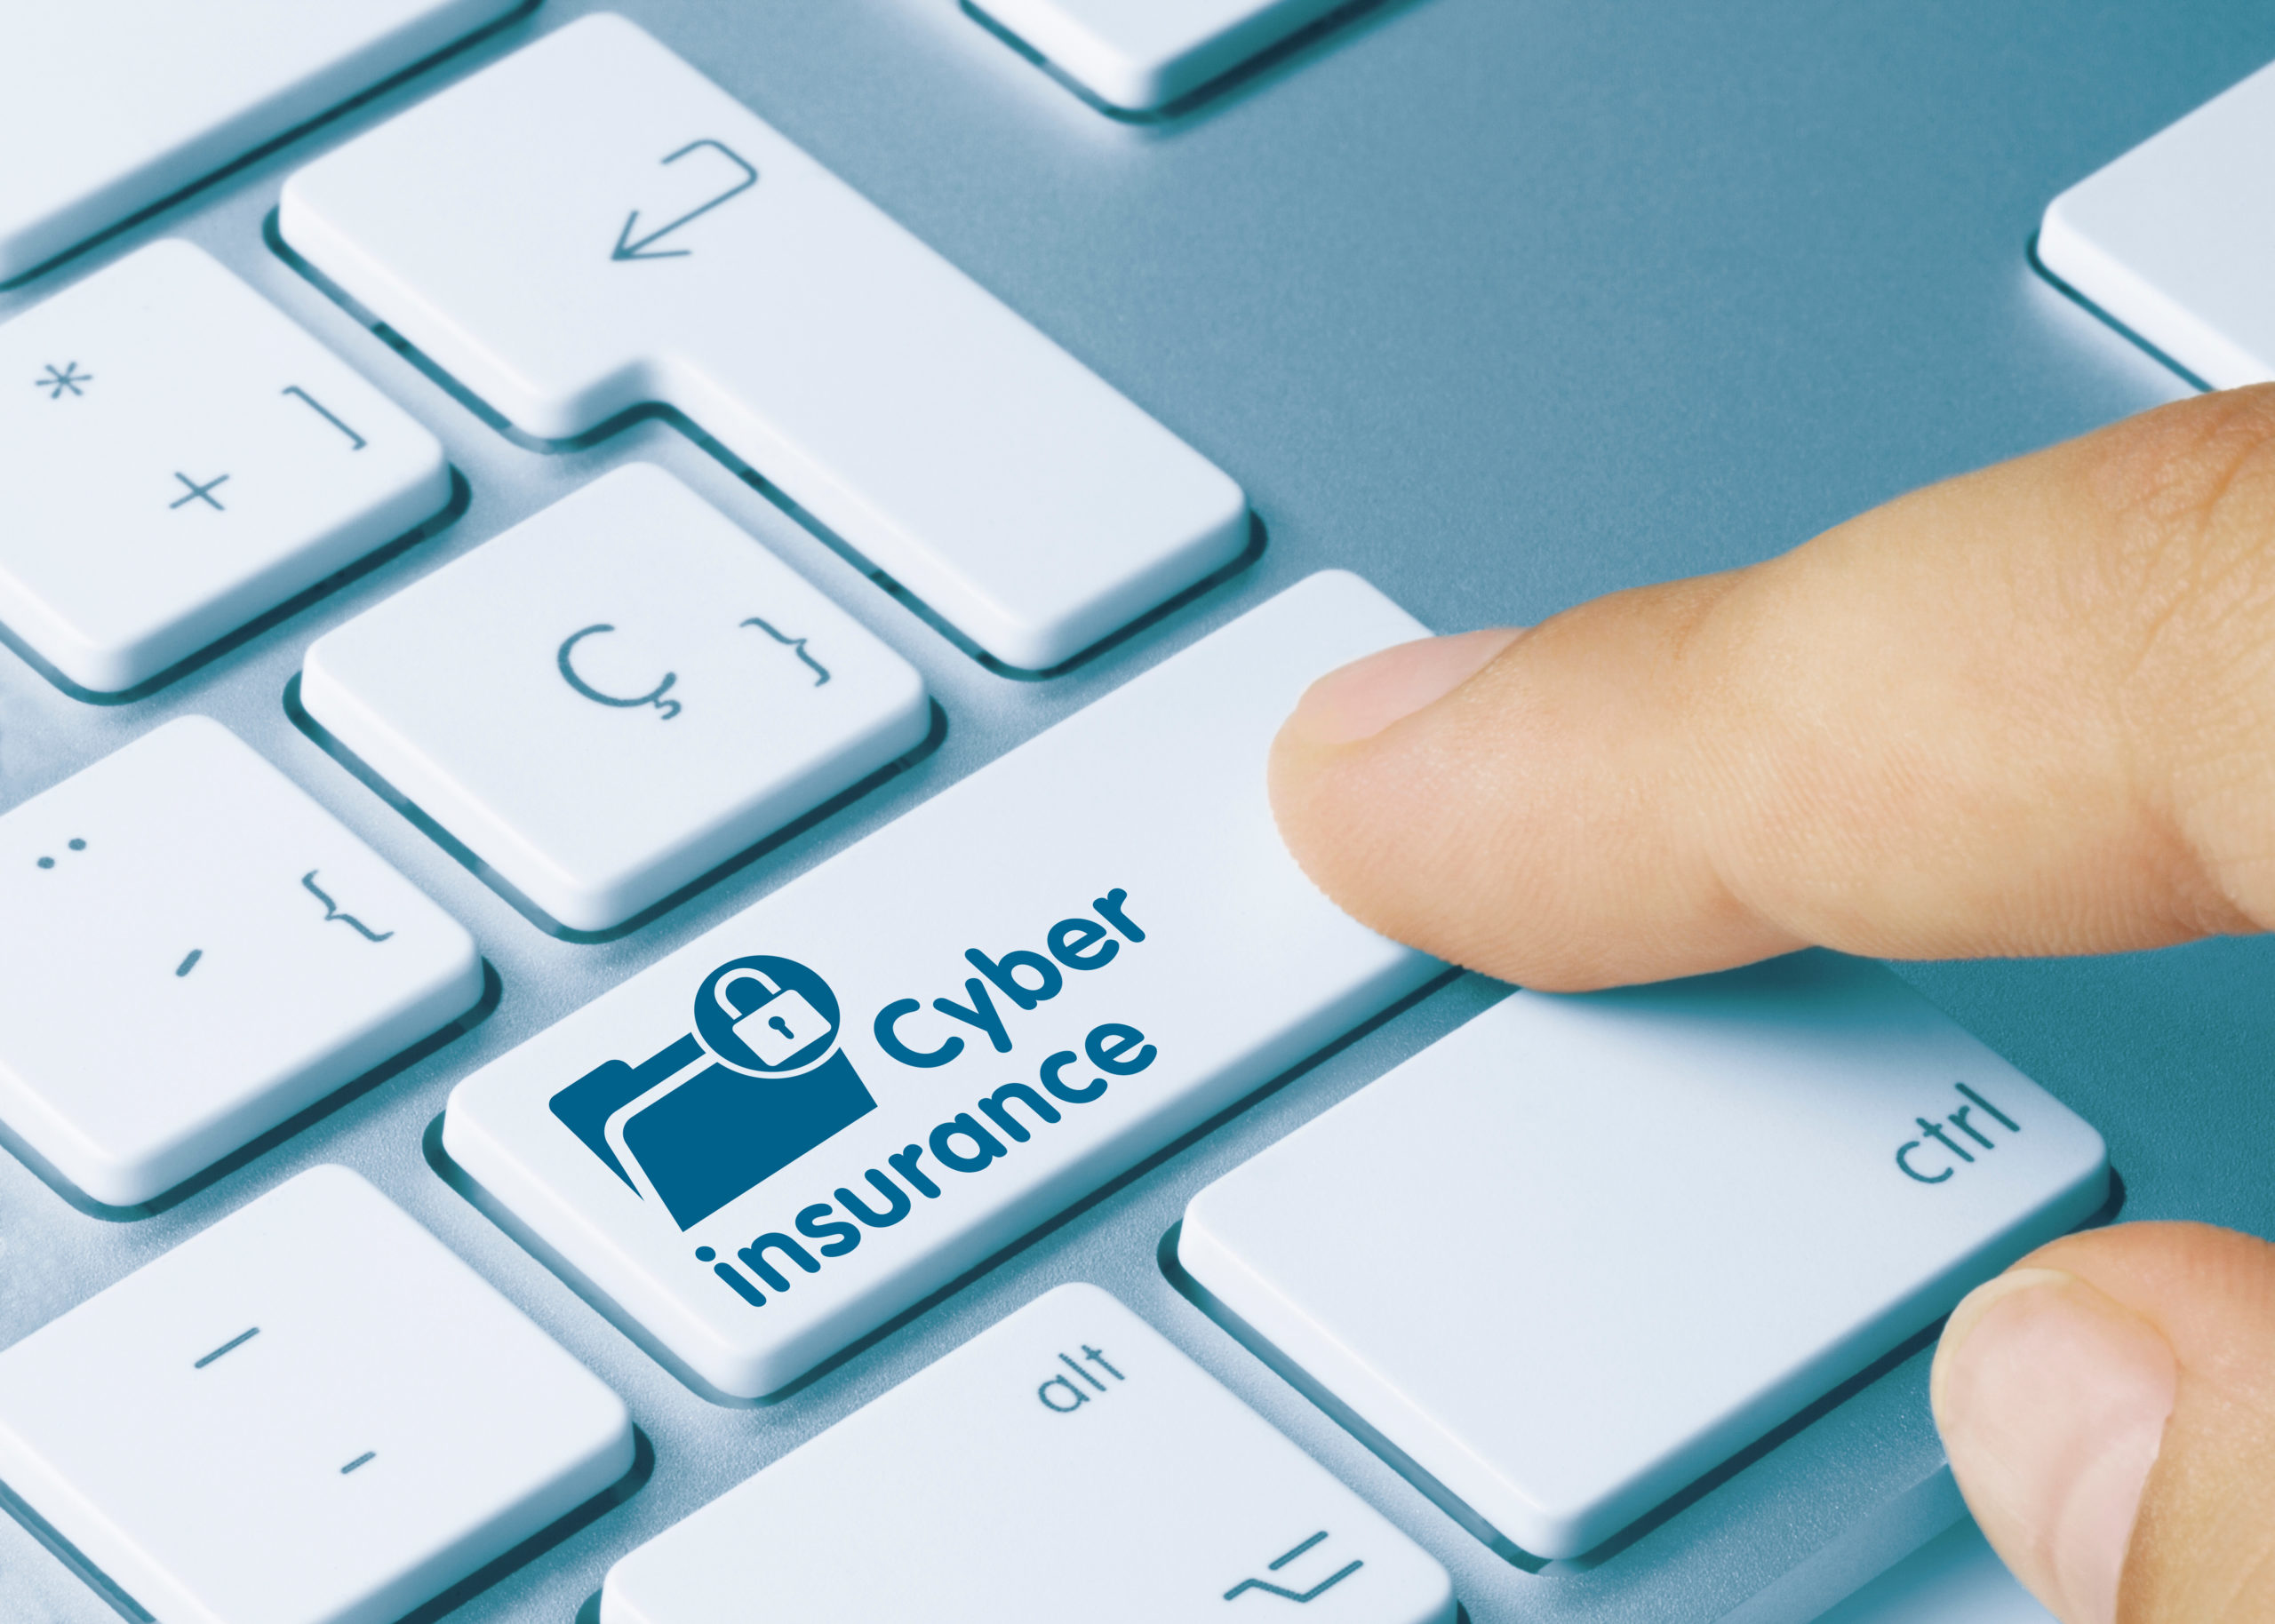 Cyber insurance - Inscription on White Keyboard Key.